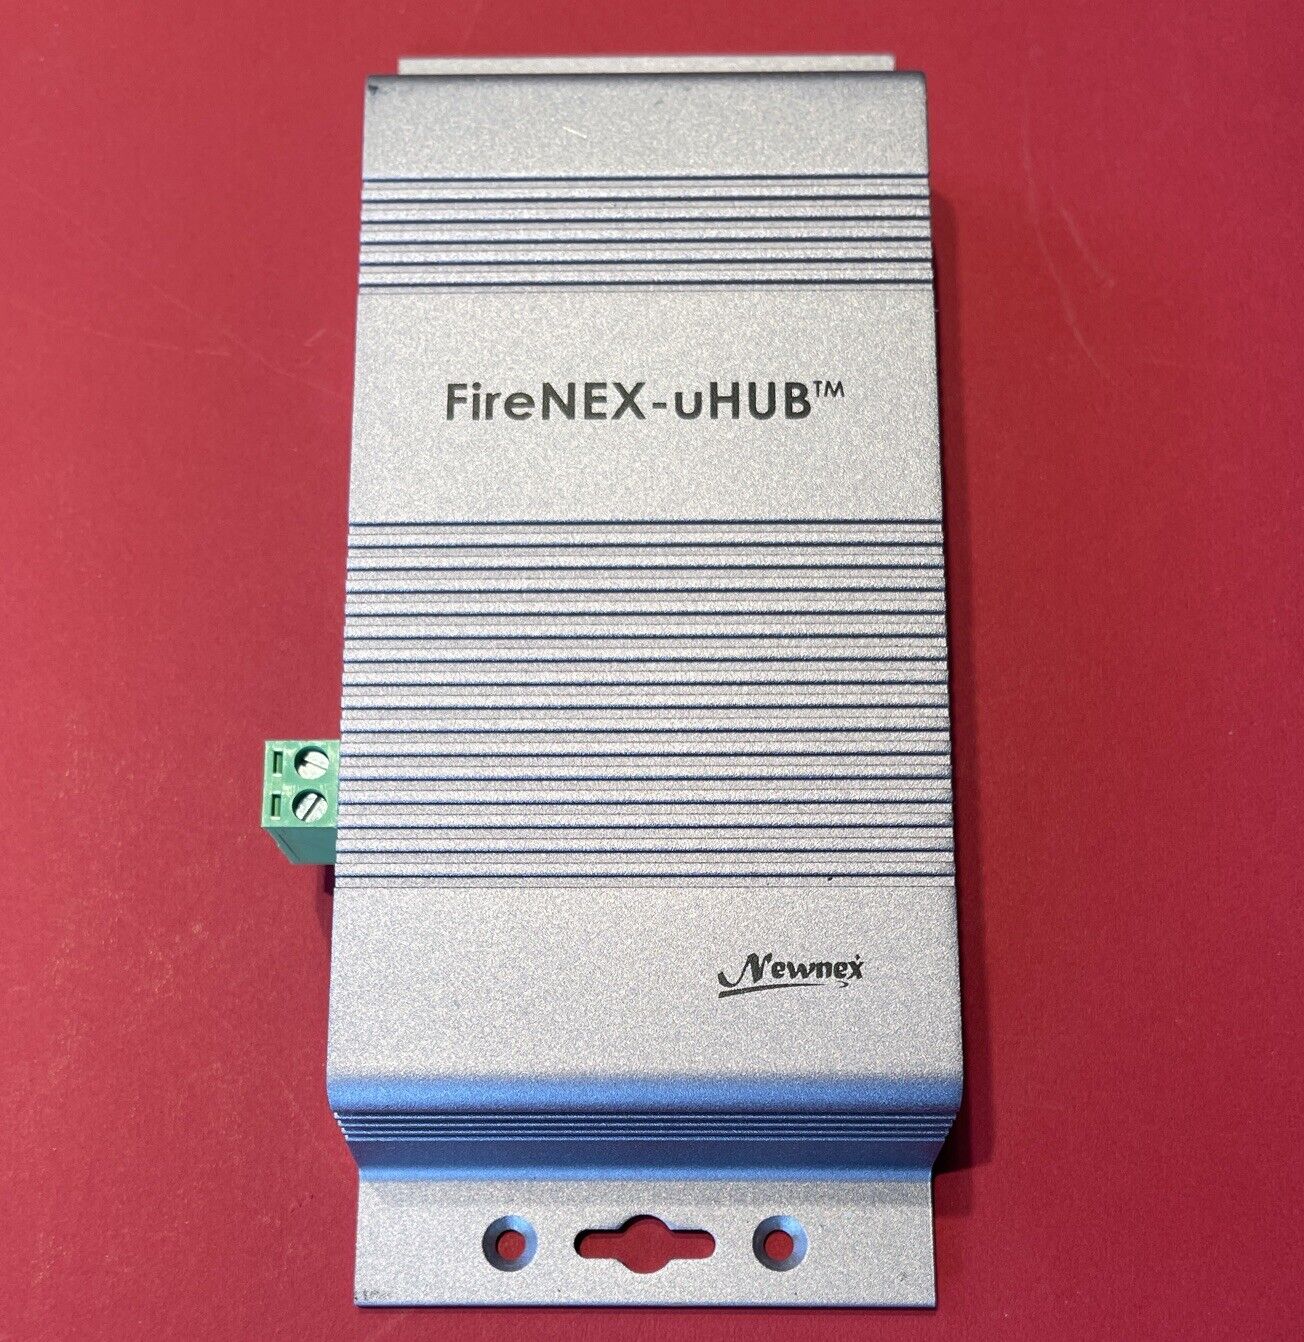 Newnex Firenex-uHUB 4 Port Industrial USB 3.0 Hub 5v / 12-24v DC